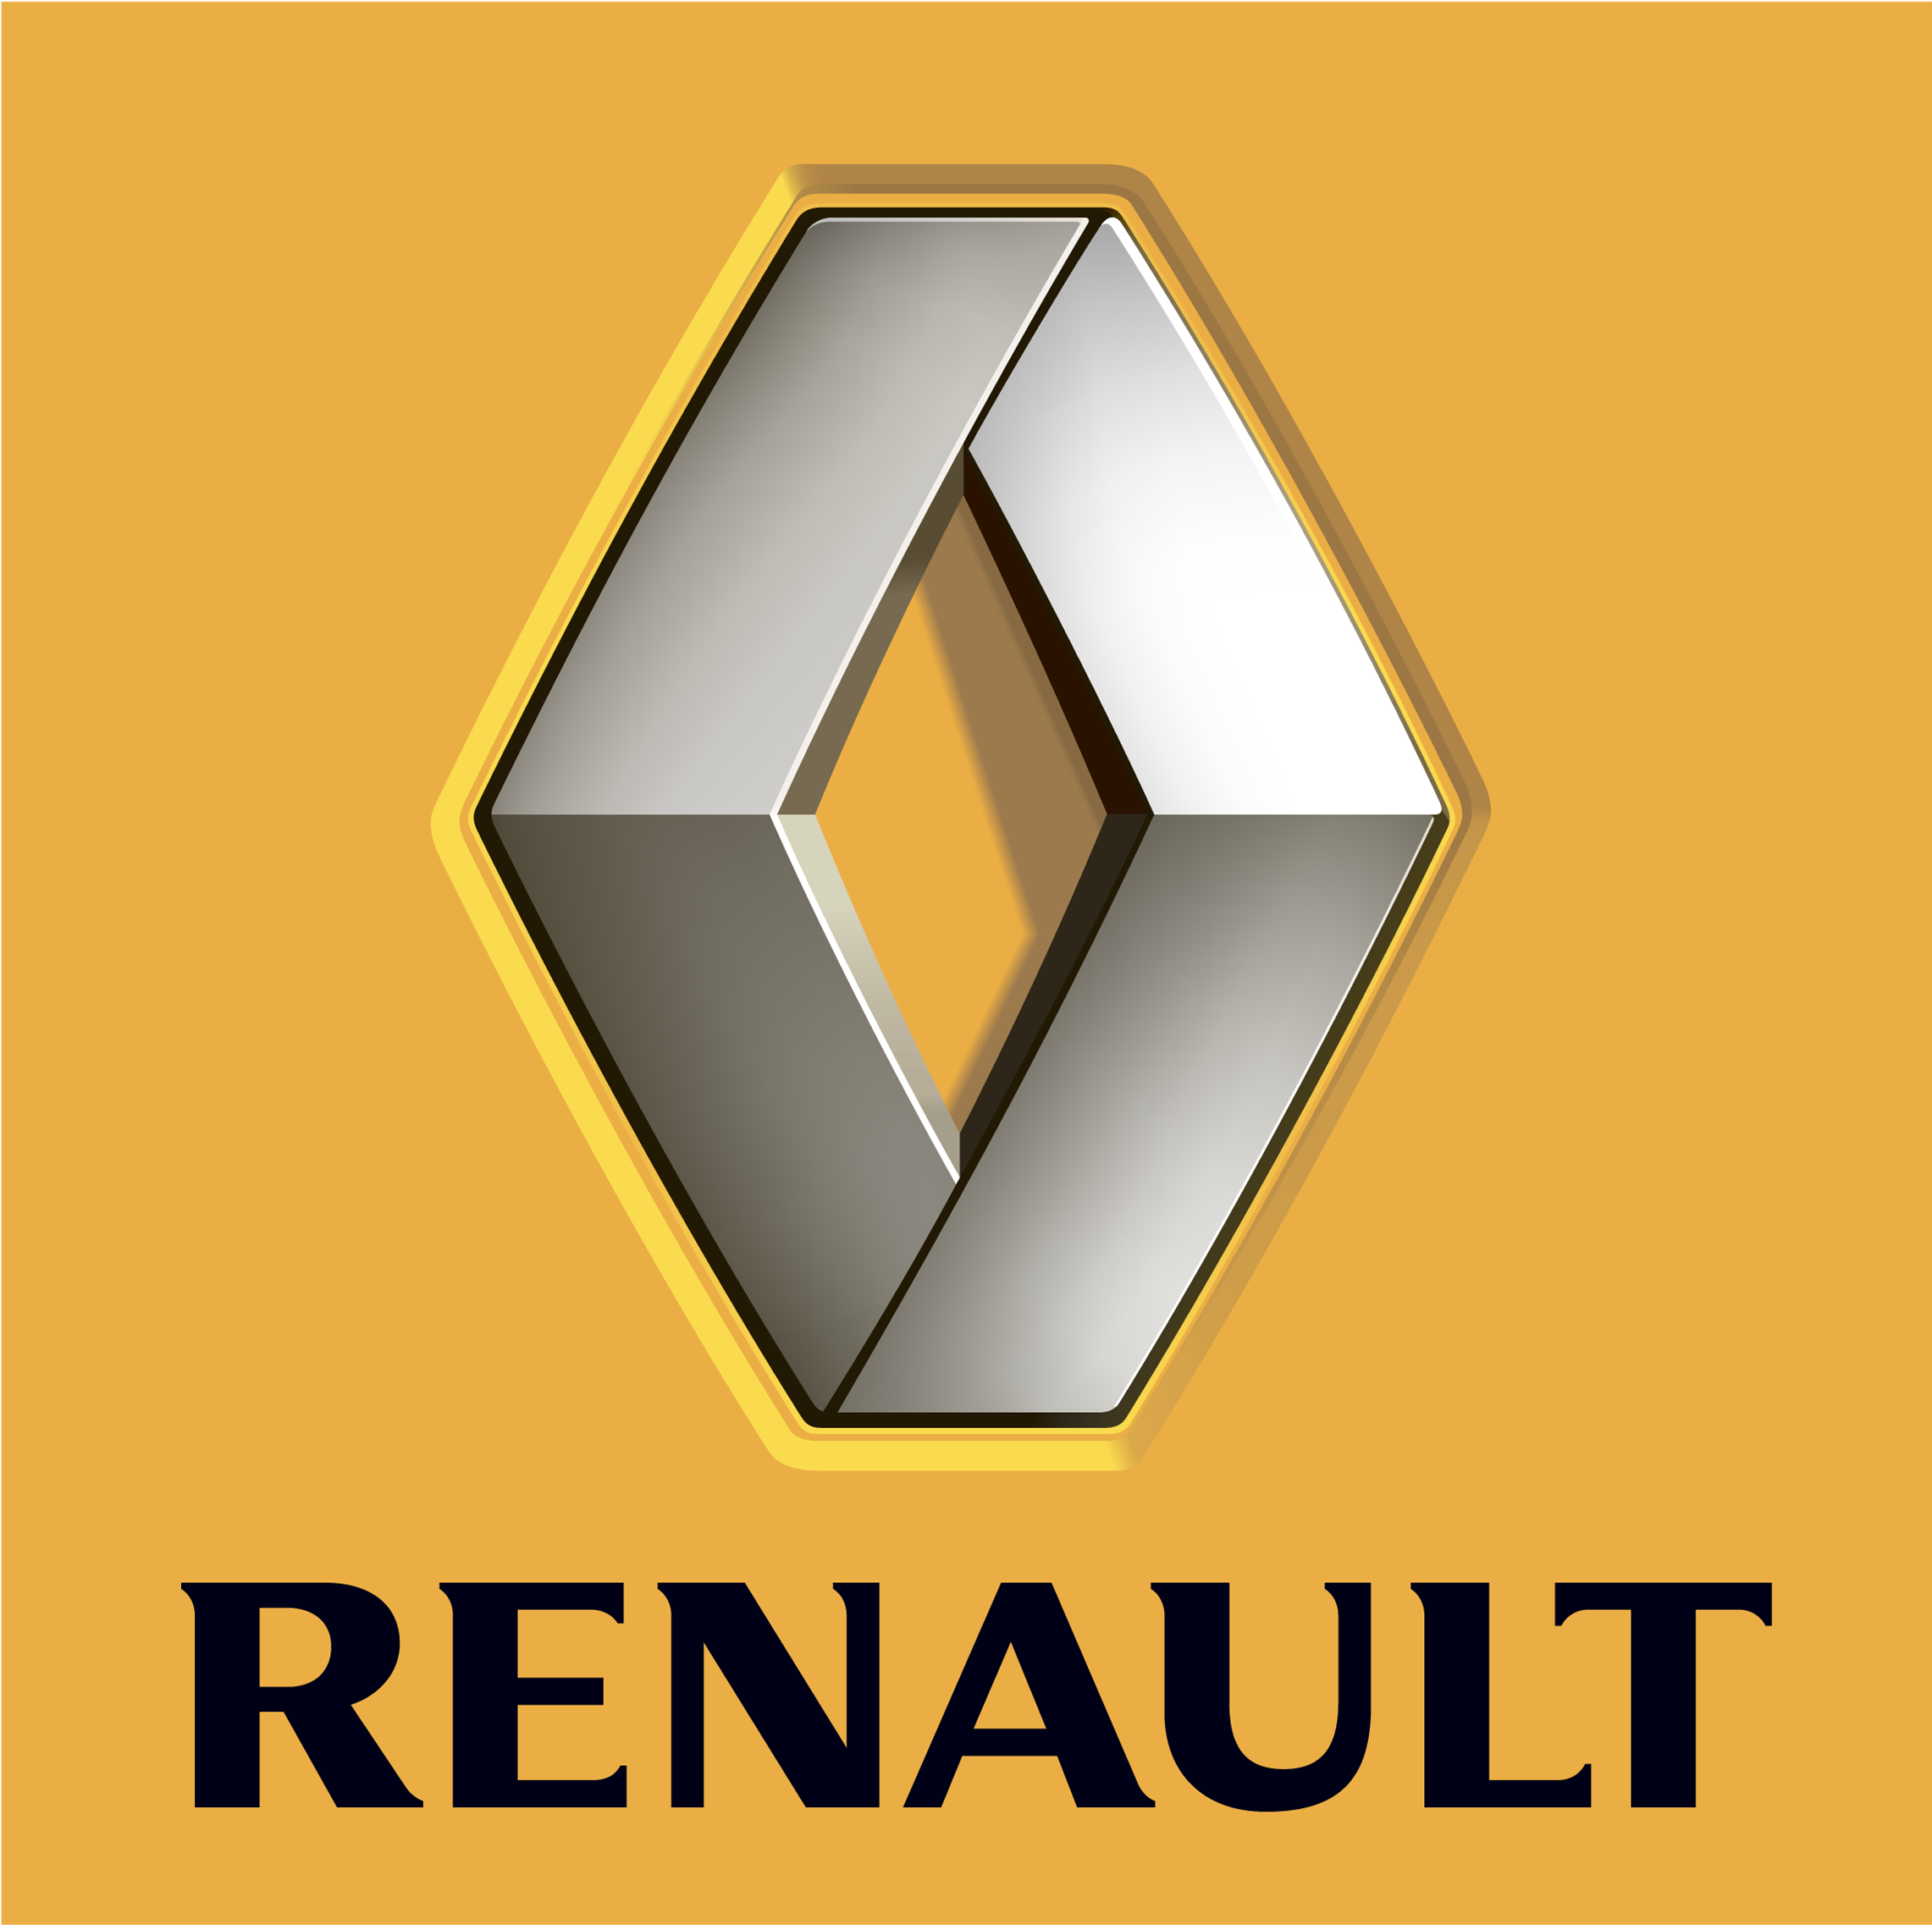 La Forma Conocida Por Todos Los Fanáticos De Renault - Renault Clipart (4128x2322), Png Download